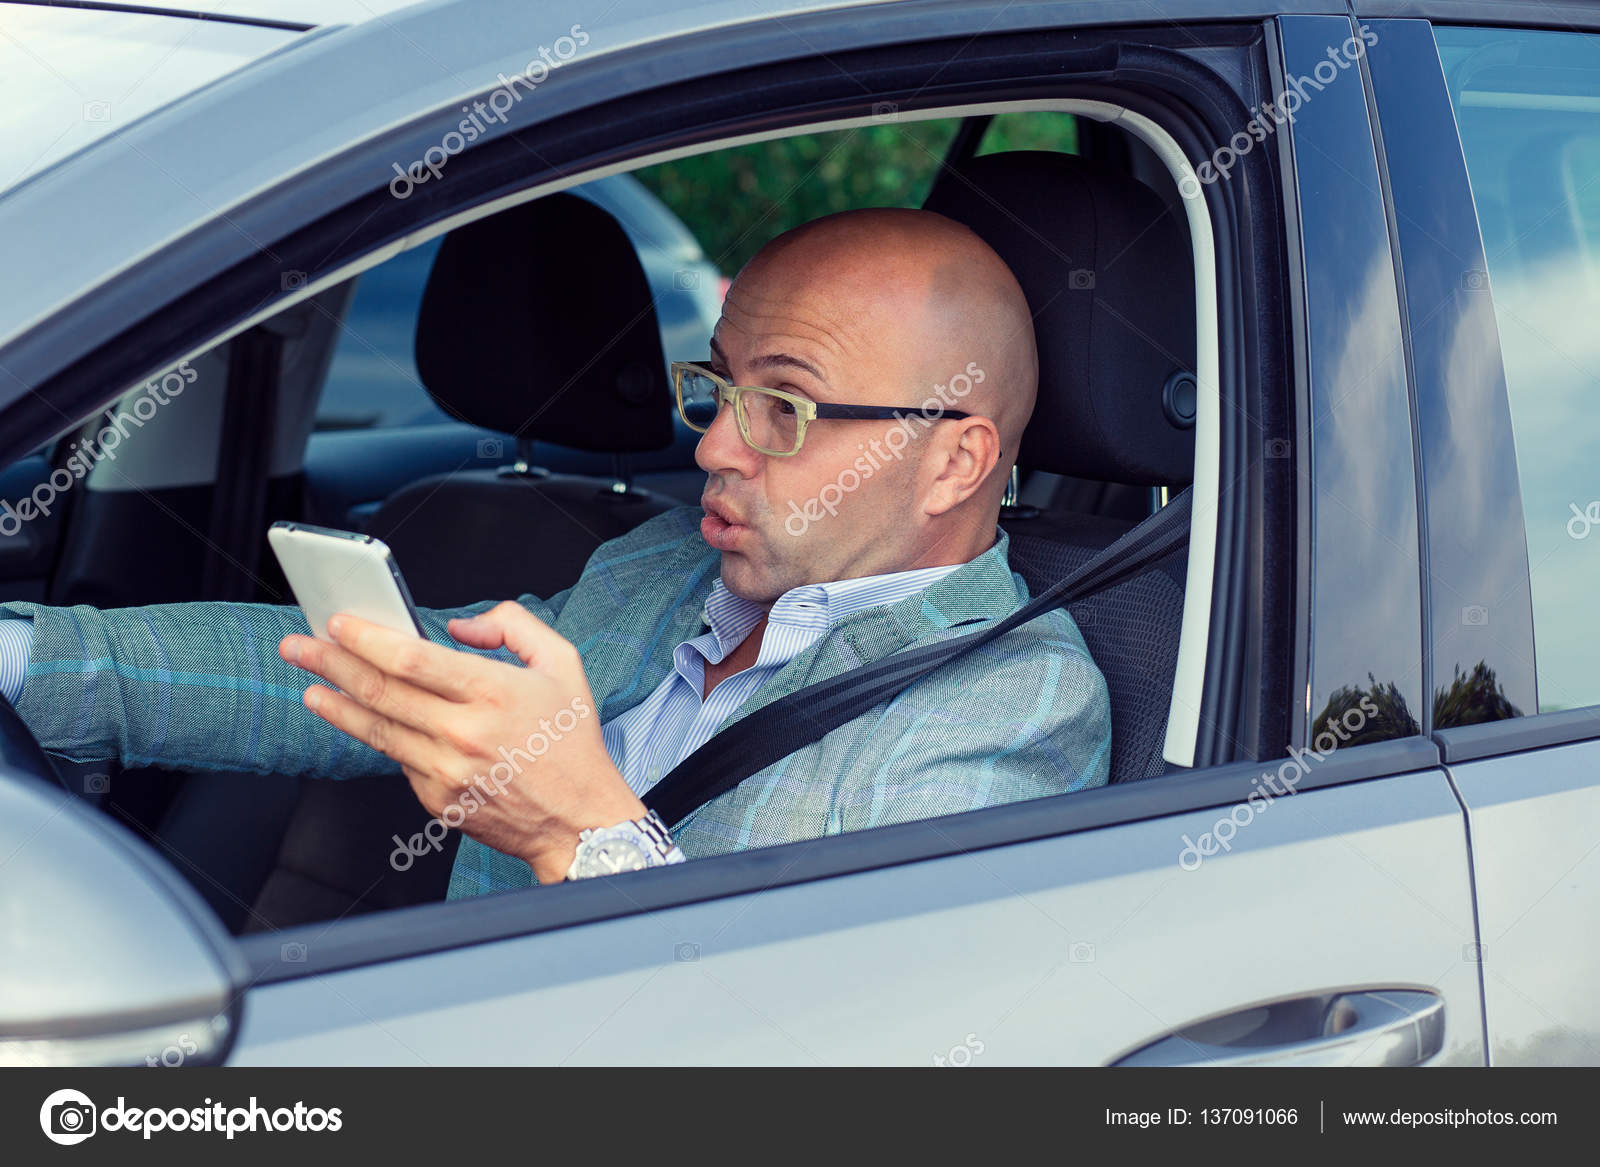 Verängstigt komisch aussehender junger Mann im Auto, das kurz vor einem  Unfall steht - Stockfotografie: lizenzfreie Fotos © HBRH 137091066